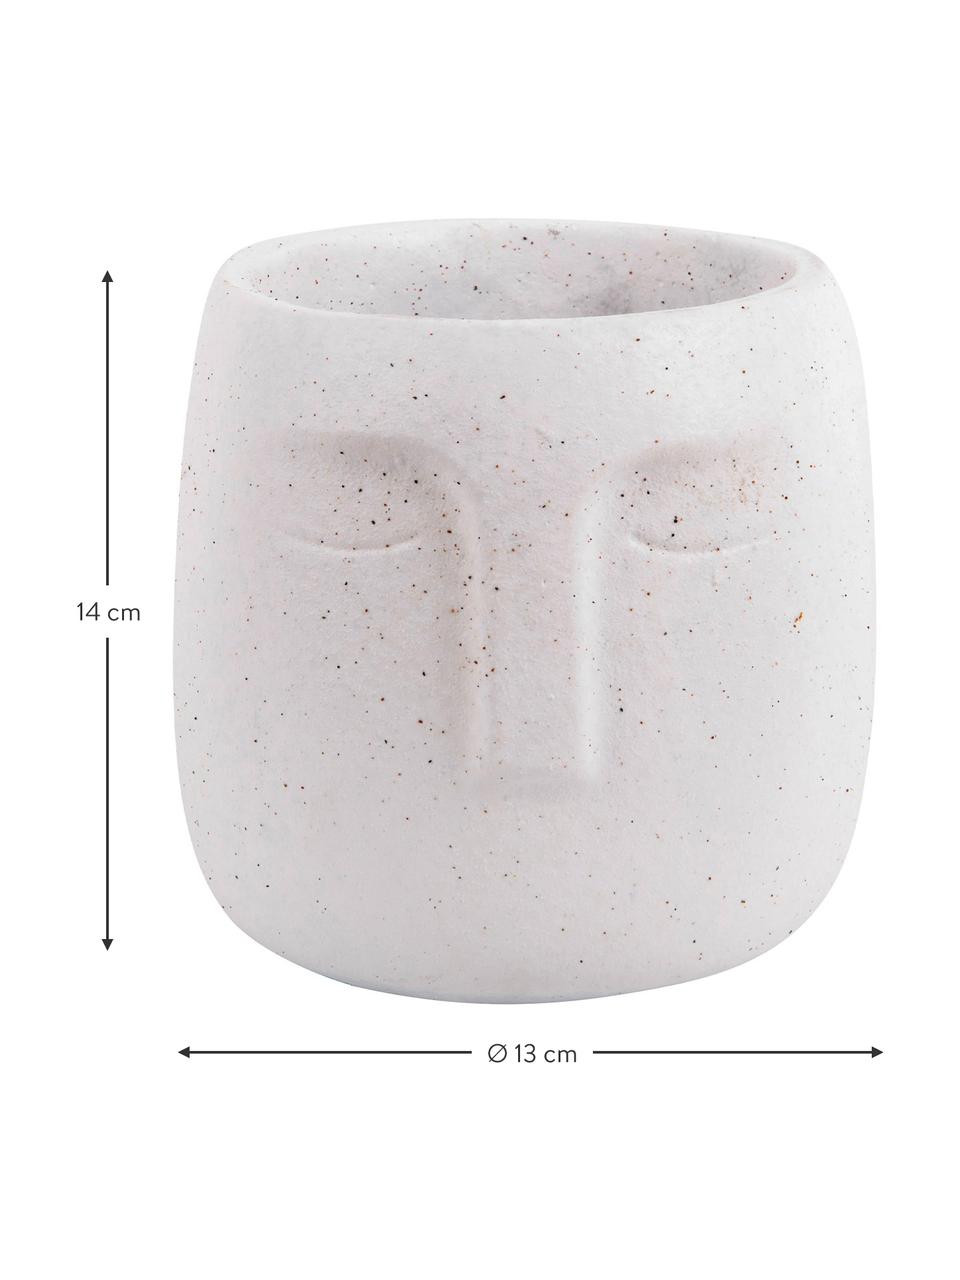 Kleiner Beton-Übertopf Face in Weiß, Beton, Weiß, Ø 12,5 x H 14 cm